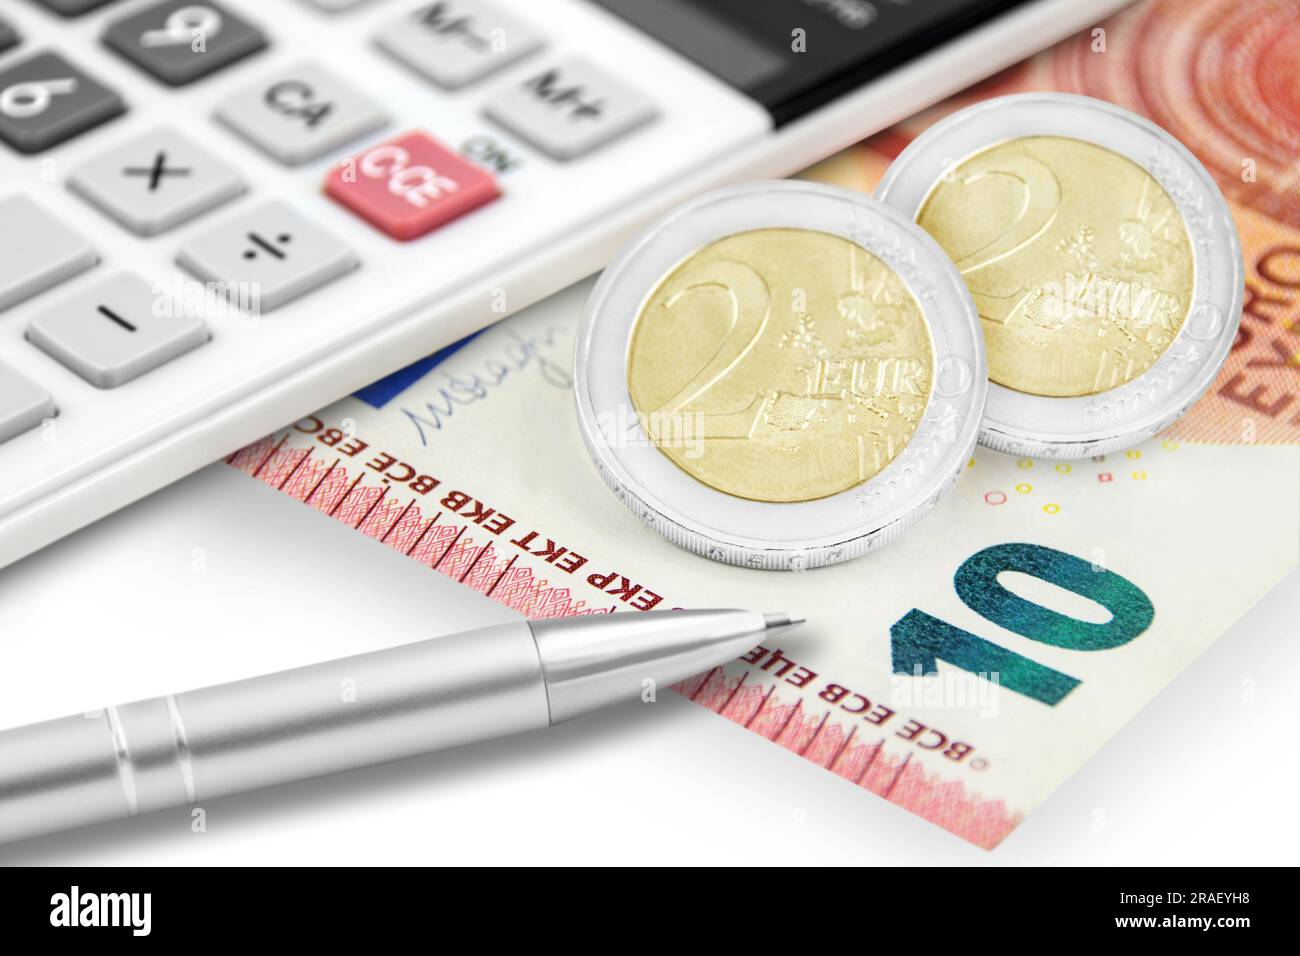 Rechner und 14,00 Euro auf weissem Hintergrund Stock Photo